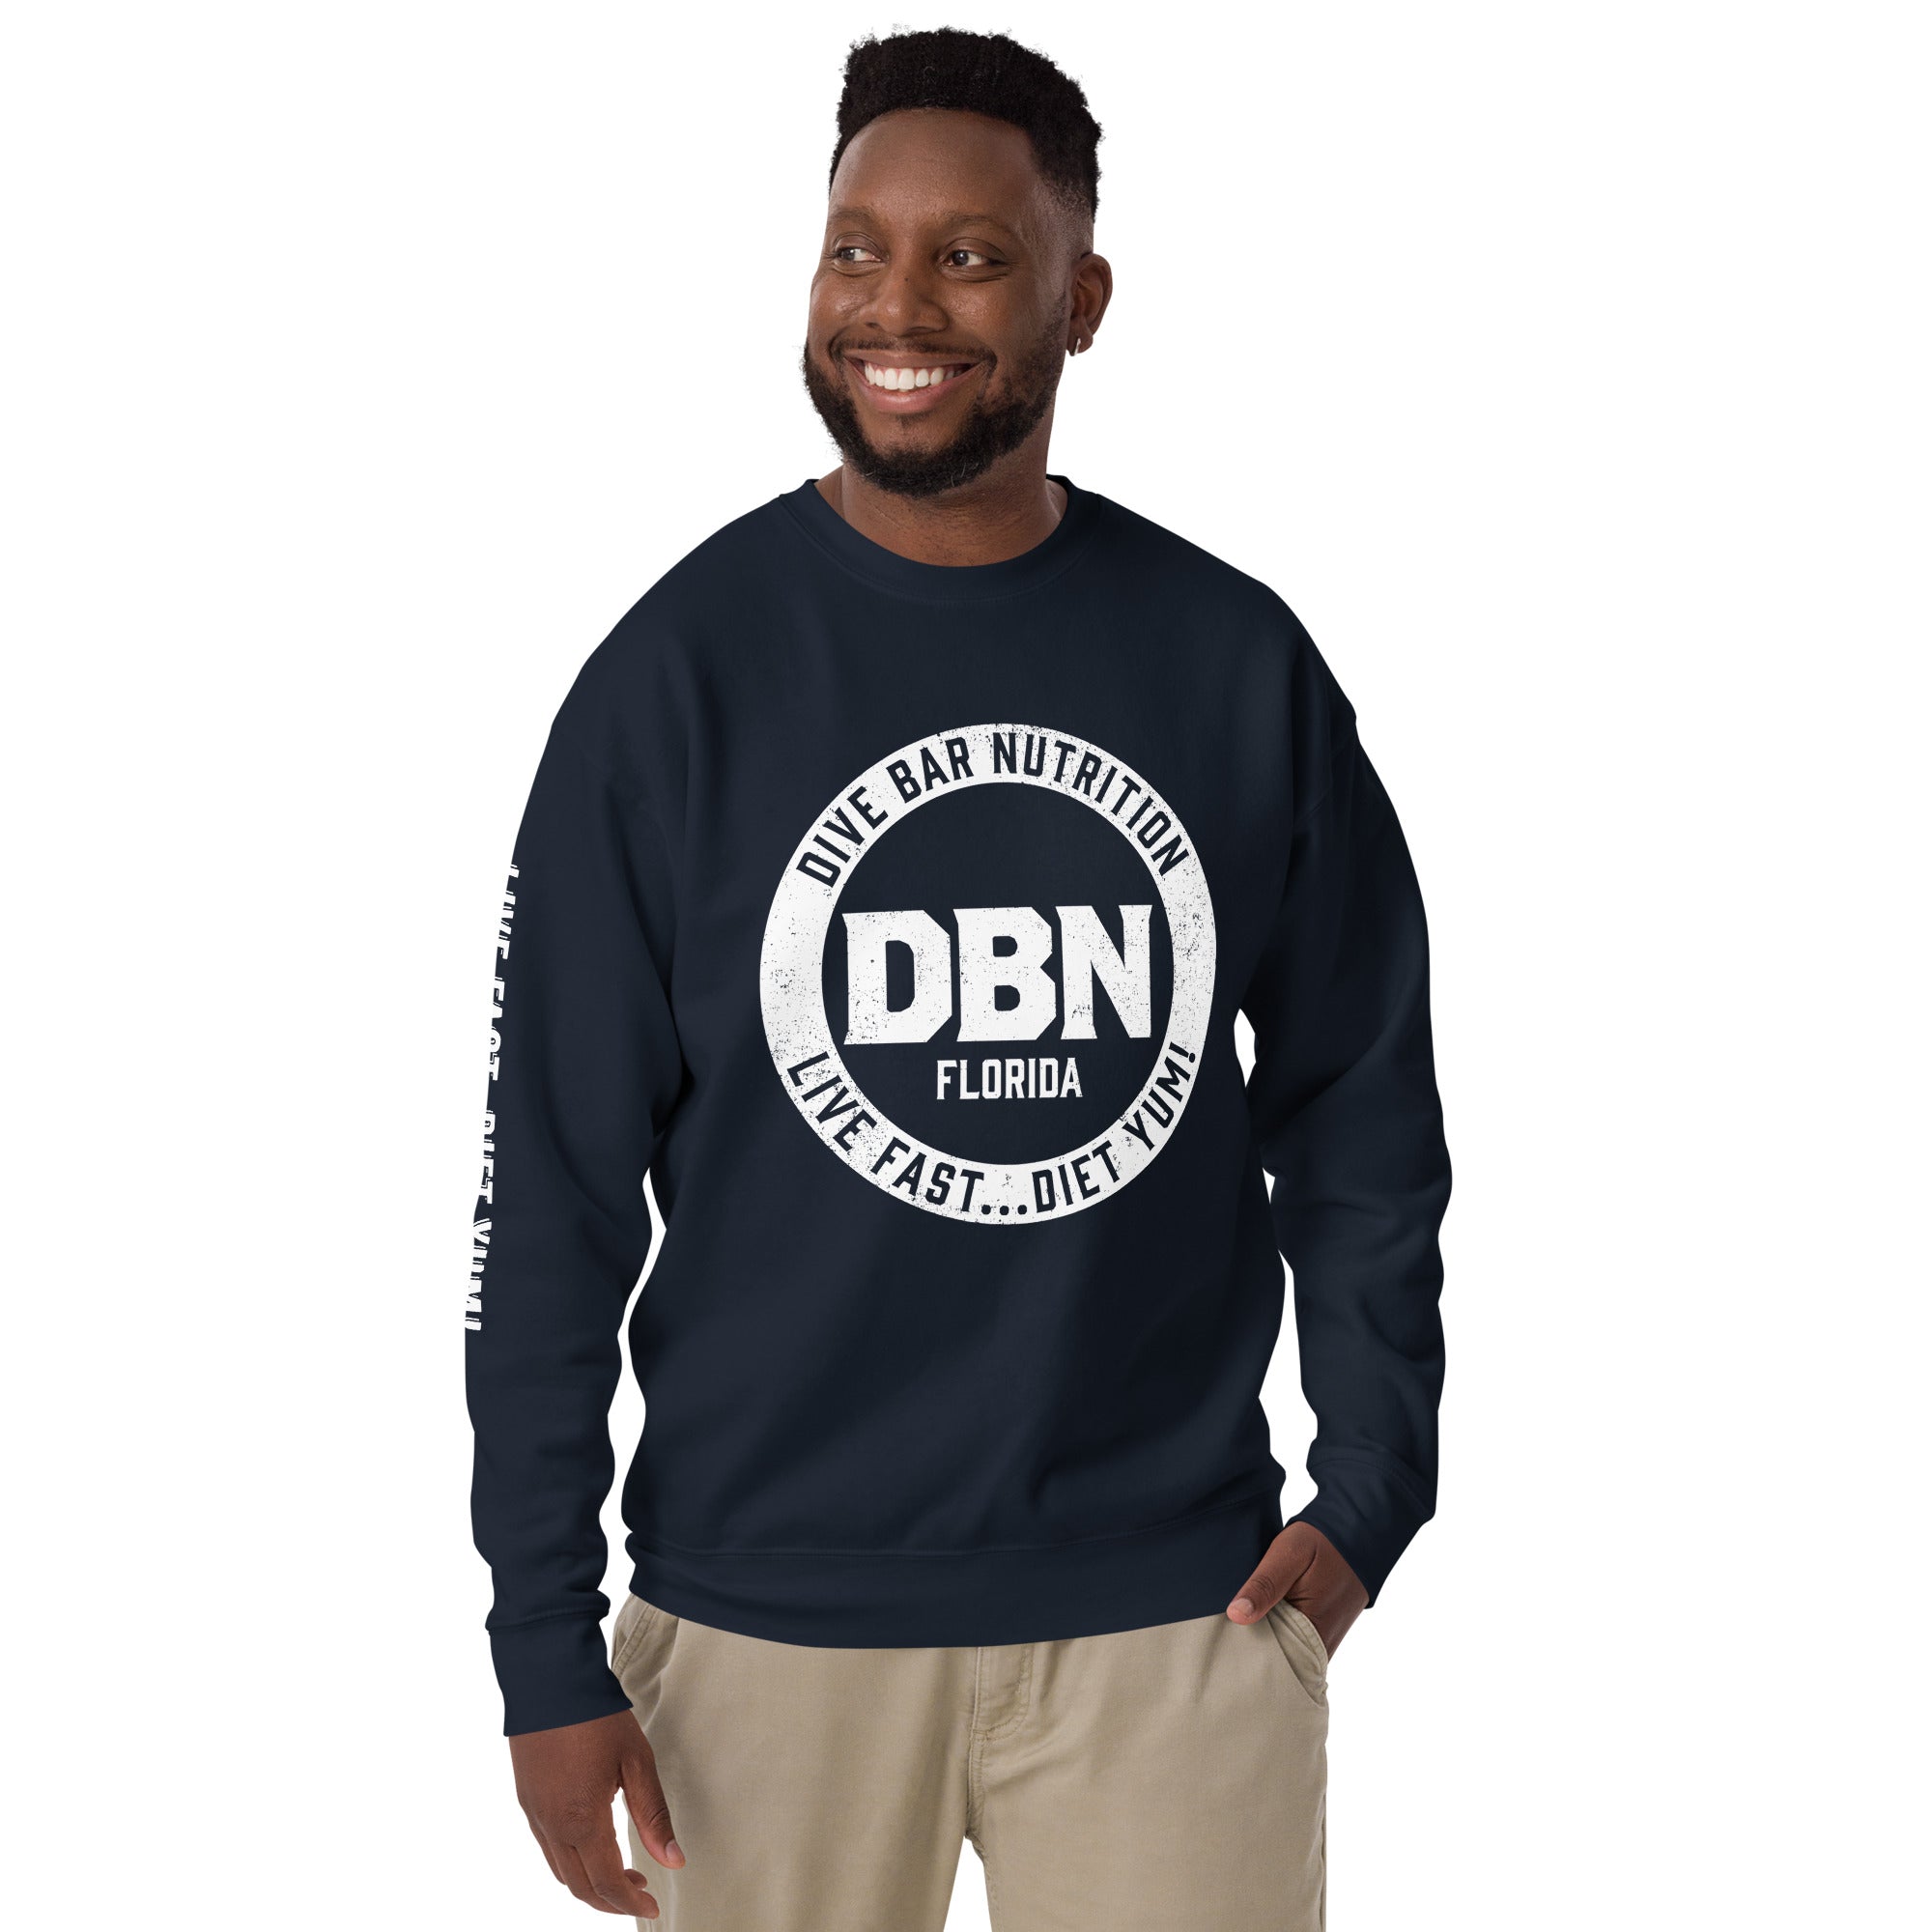 White DBN Logo Unisex Premium Sweatshirt